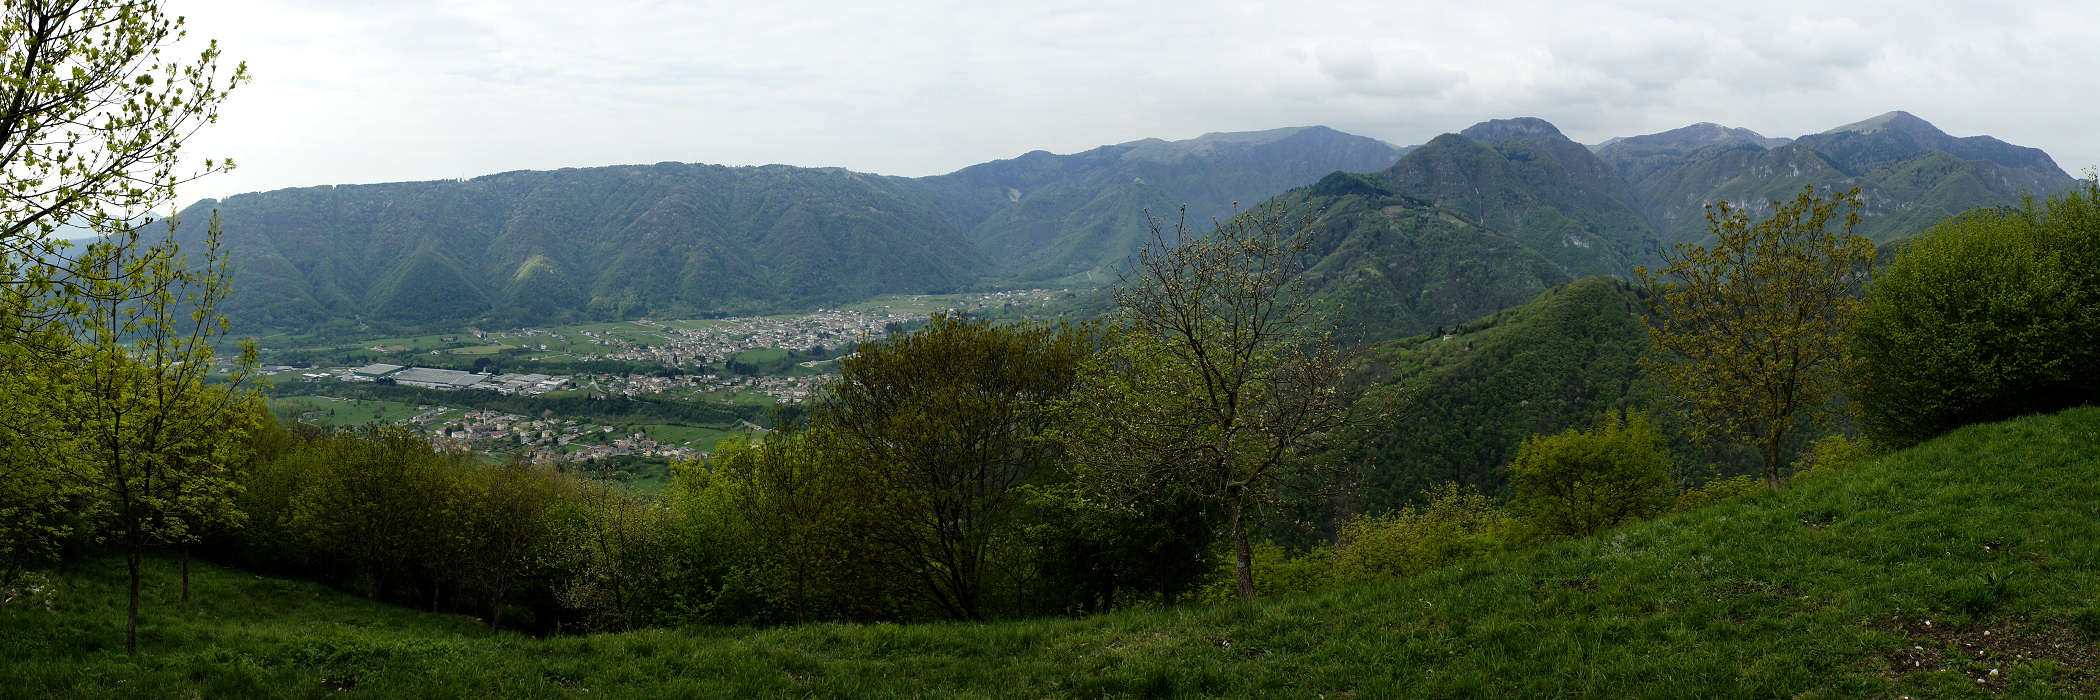 Valle di Alano di Piave, Quero, Monte Grappa - fotografia panoramica